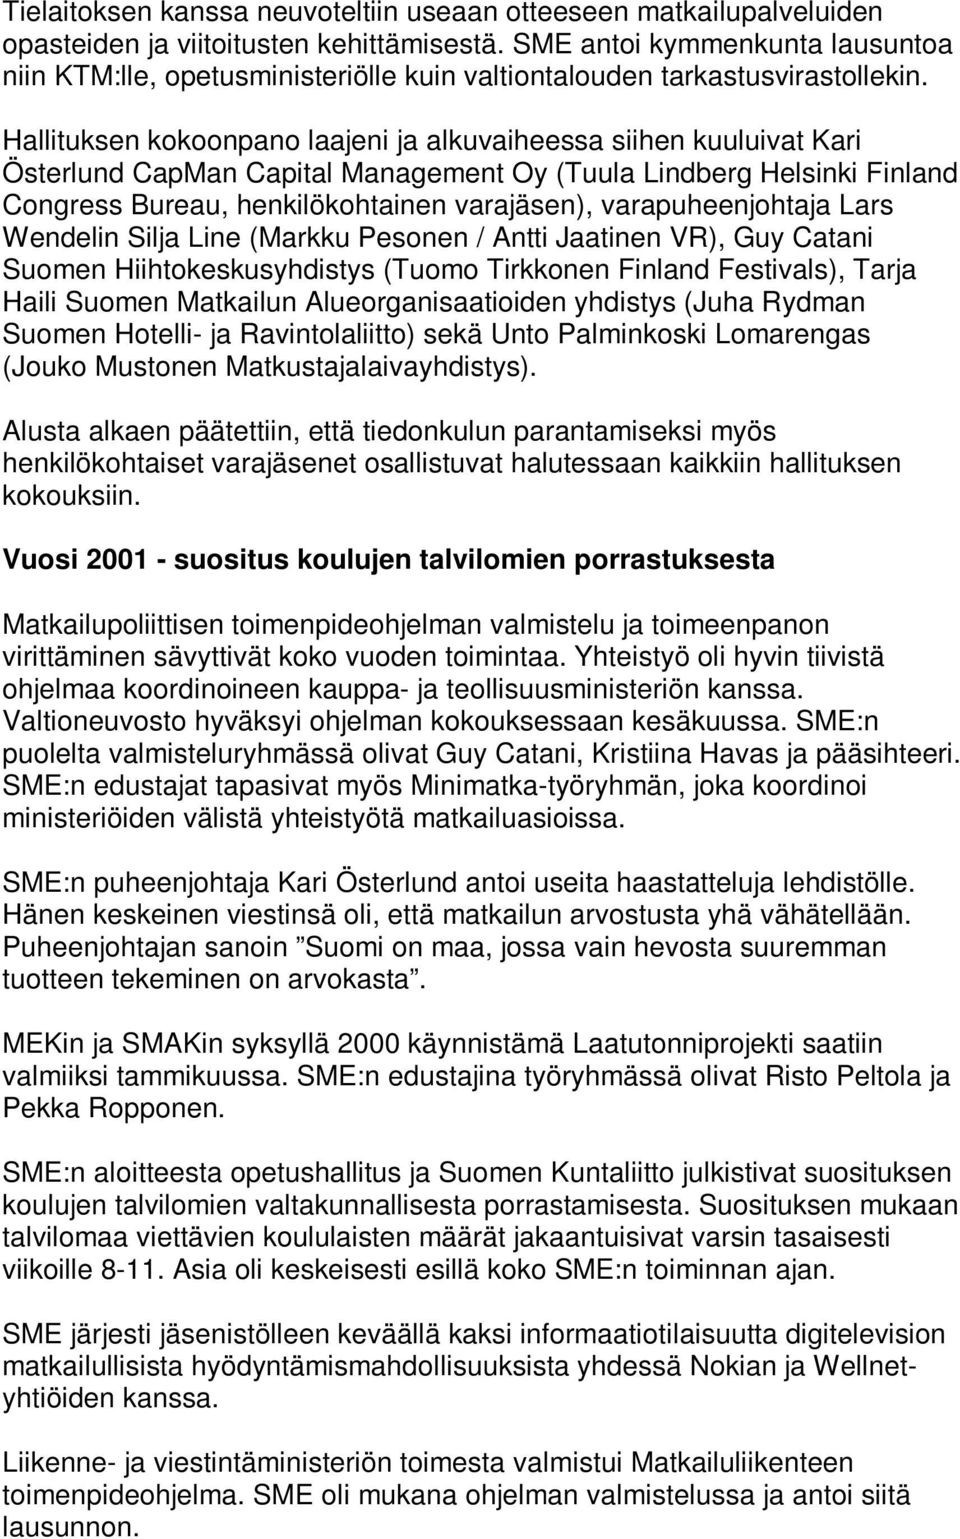 Hallituksen kokoonpano laajeni ja alkuvaiheessa siihen kuuluivat Kari Österlund CapMan Capital Management Oy (Tuula Lindberg Helsinki Finland Congress Bureau, henkilökohtainen varajäsen),